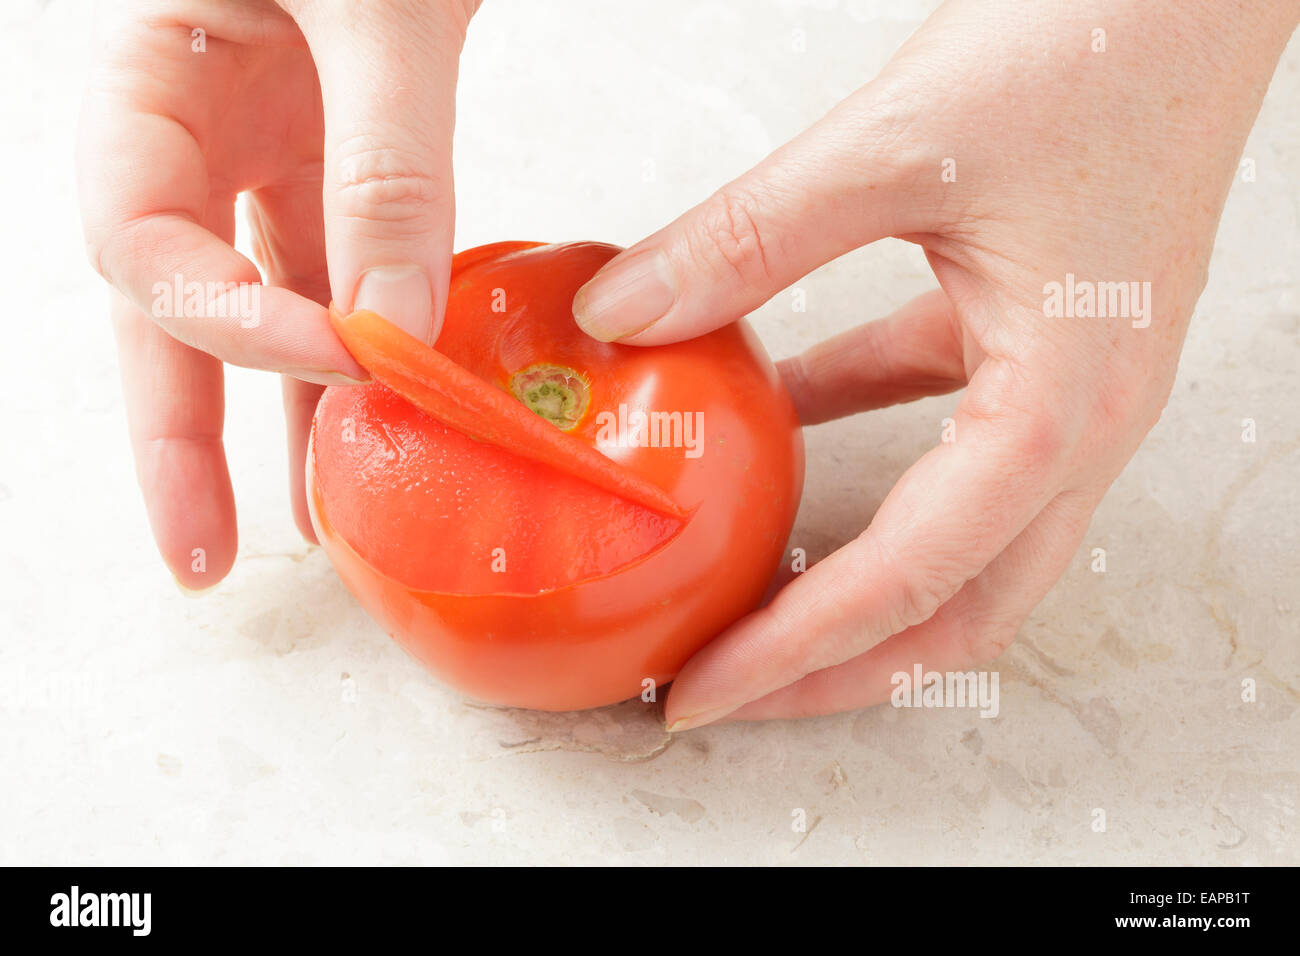 Manos quitando la piel de un tomate Foto de stock